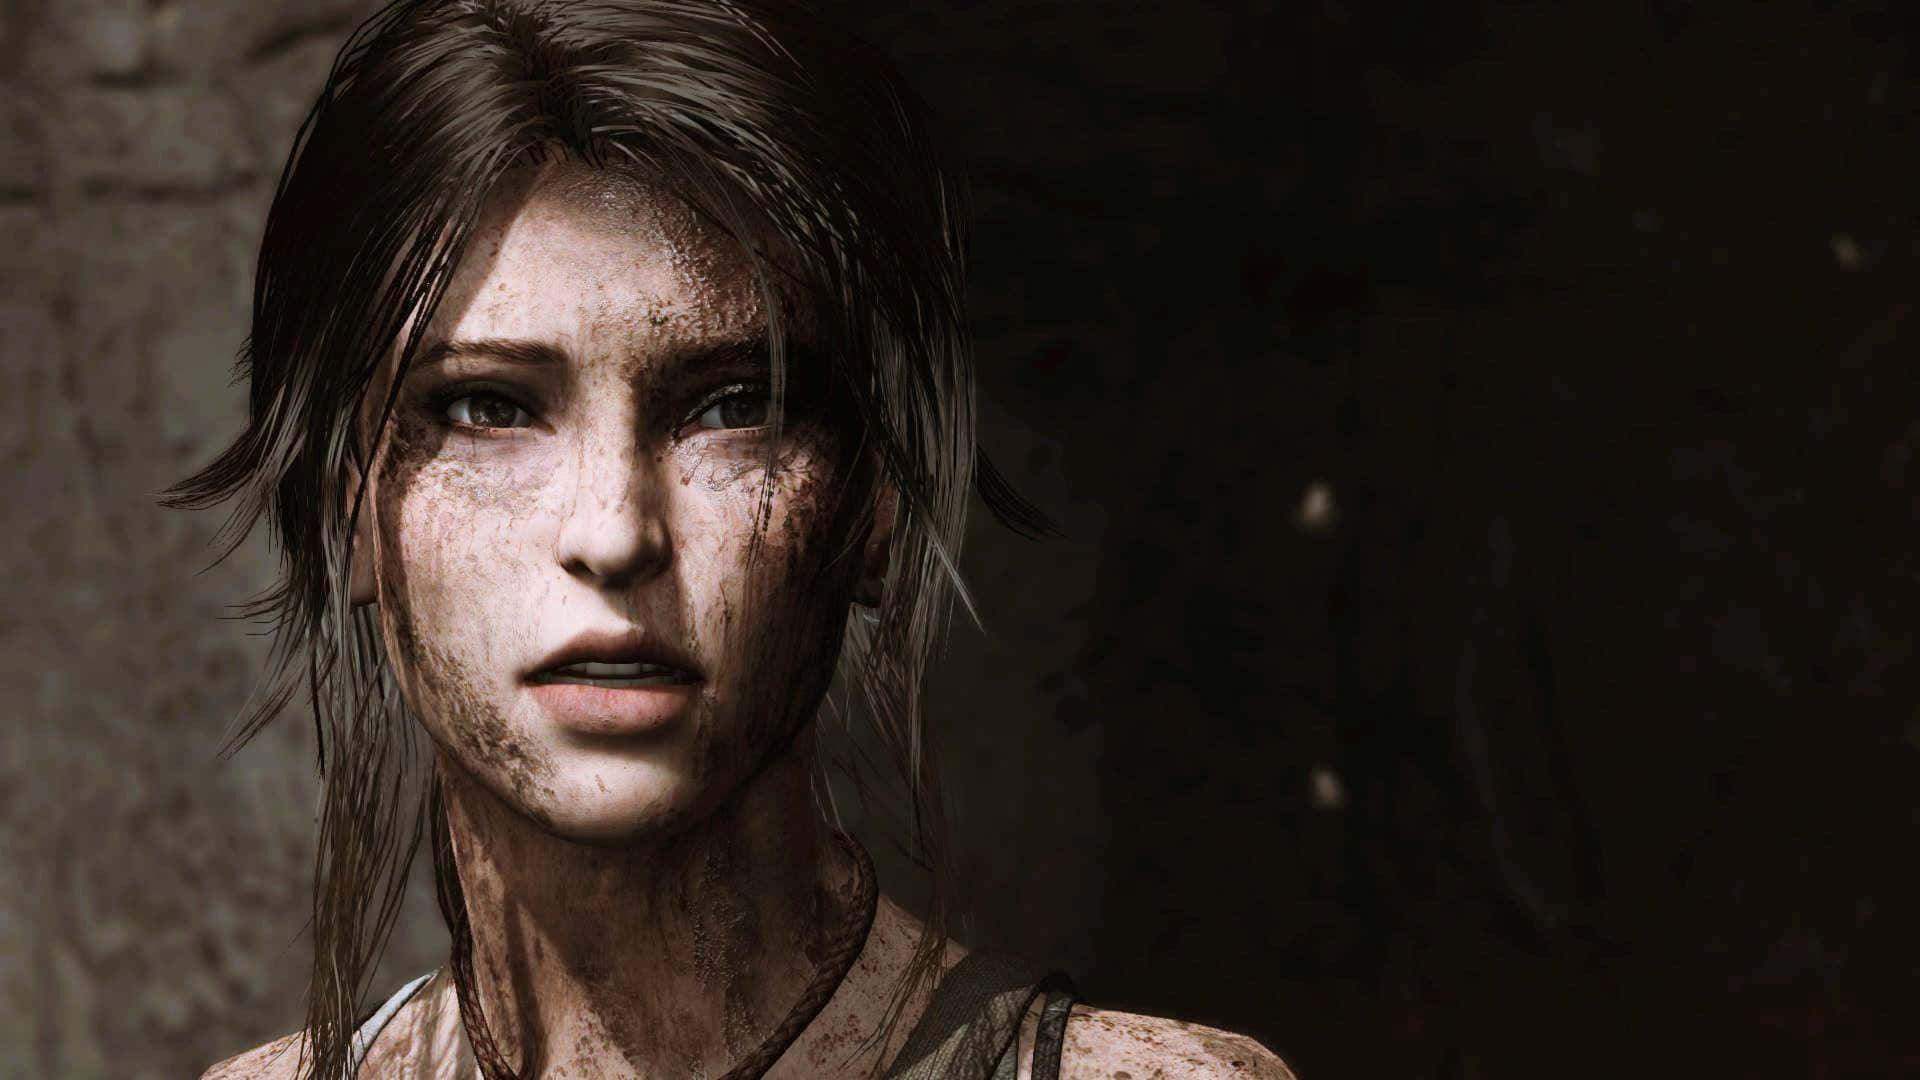 Preparatiper Un'epica Avventura Con Lara Croft In Shadow Of The Tomb Raider.